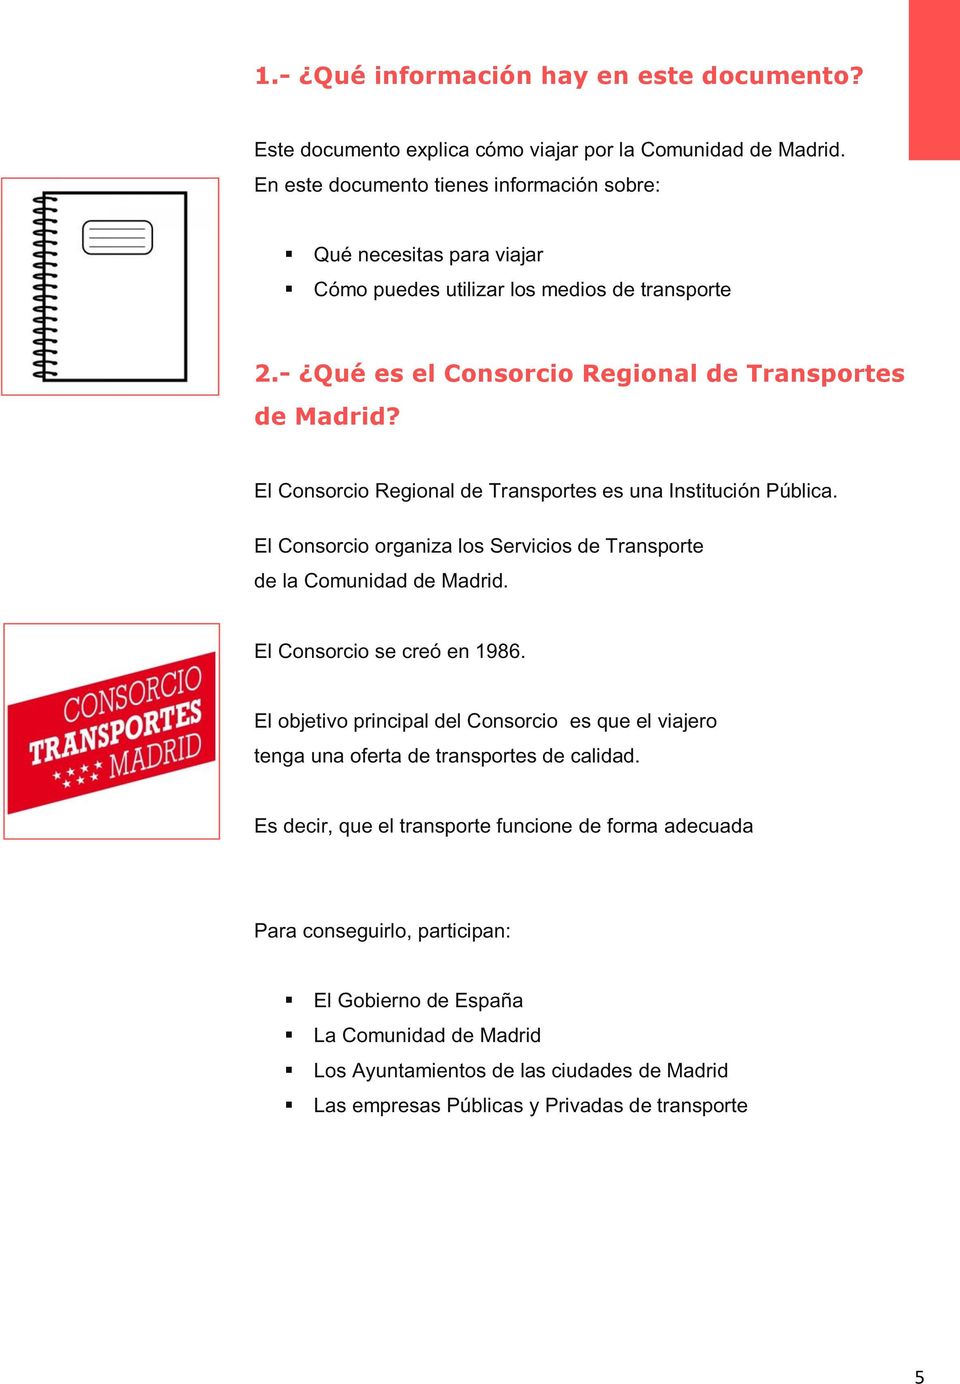 El Consorcio Regional de Transportes es una Institución Pública. El Consorcio organiza los Servicios de Transporte de la Comunidad de Madrid. El Consorcio se creó en 1986.